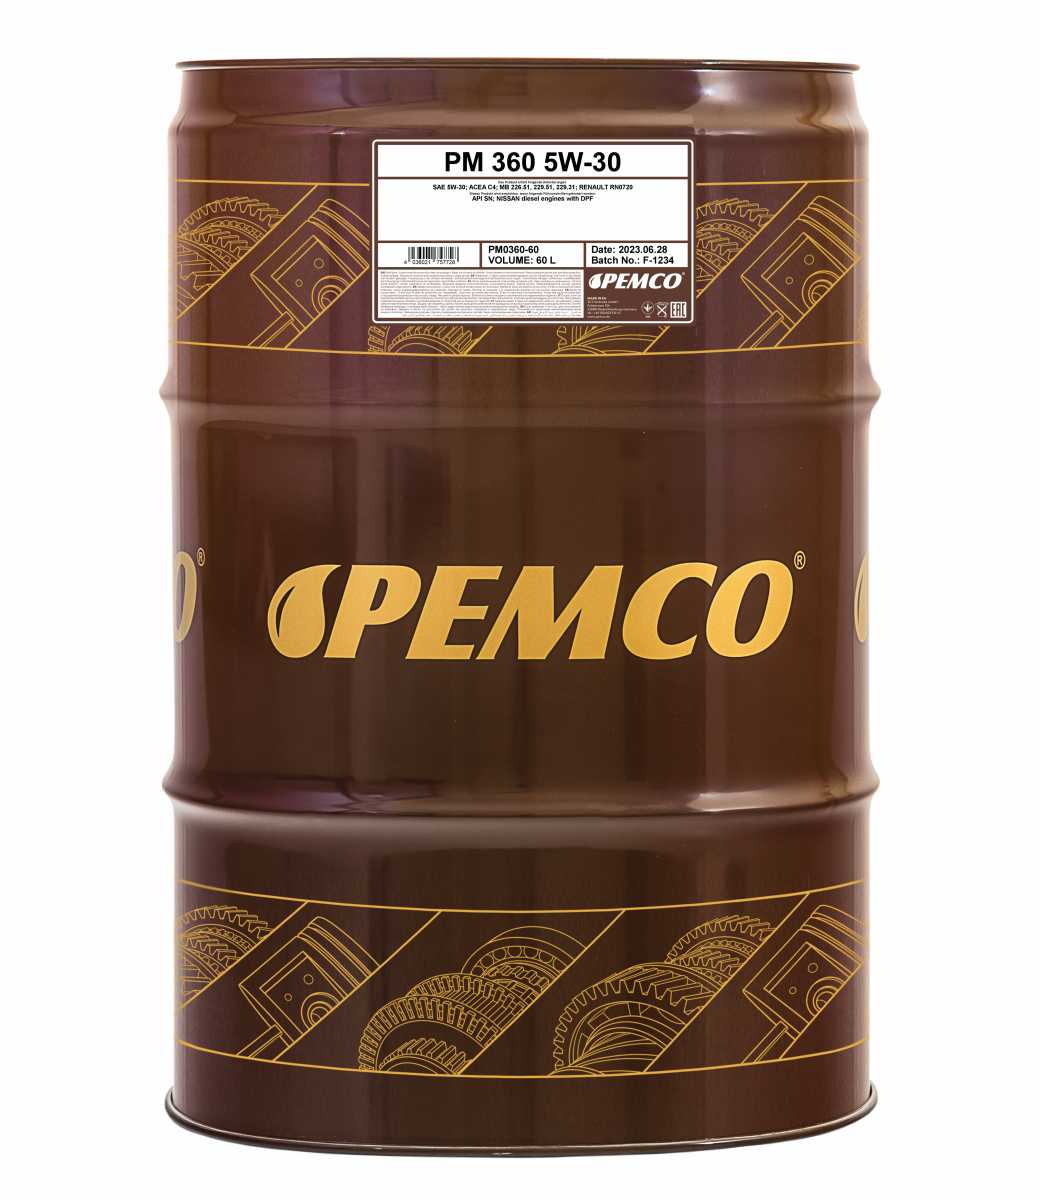 Pemco Diesel 10w 40. Pemco Diesel g-5 UHPD 10w-40 pm0705. Масло Pemco 10w 40. Pemco 330 5w30. Hydros гидравлическое масло